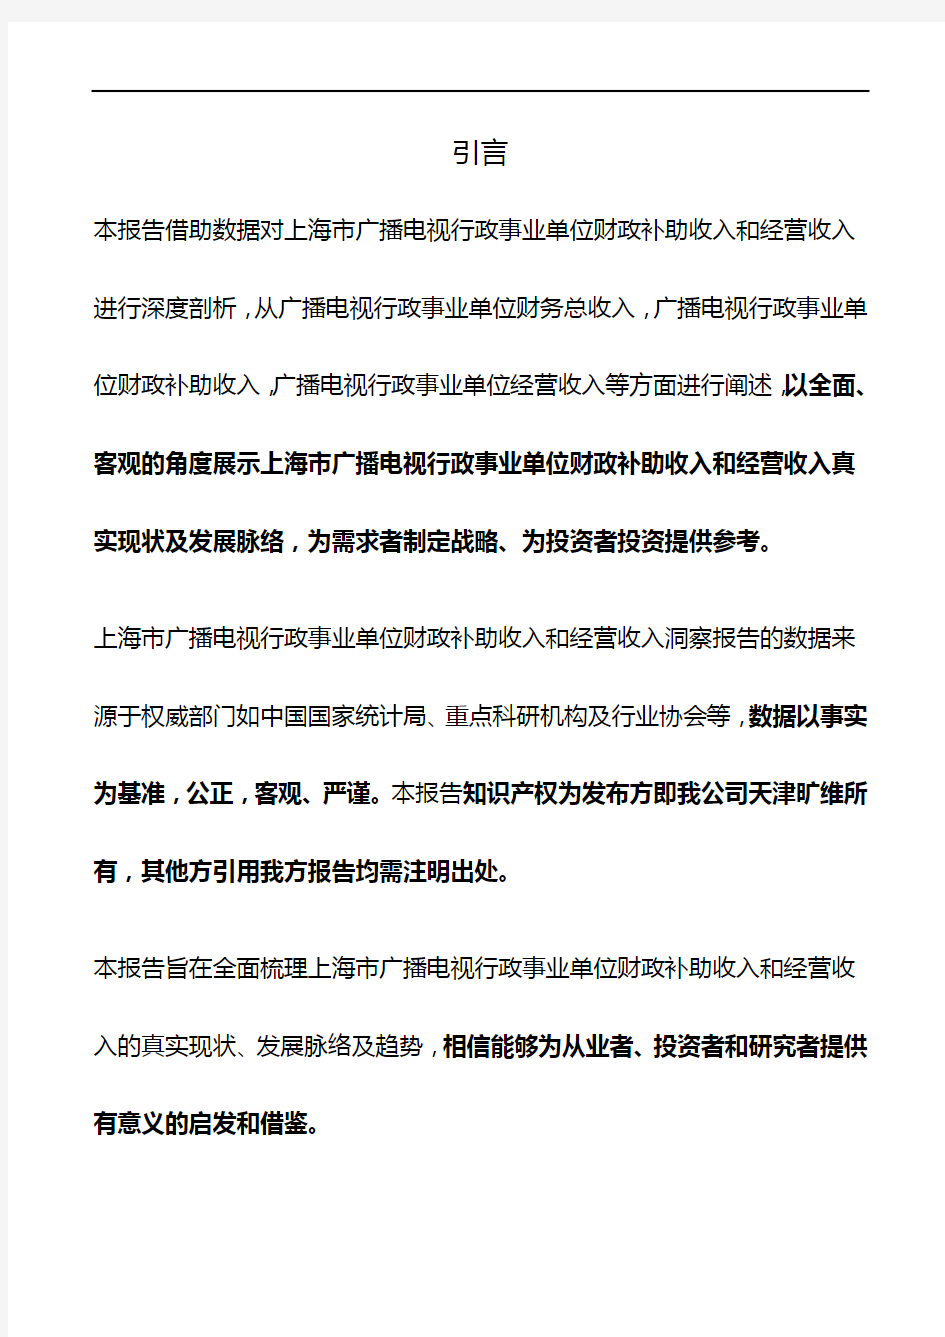 上海市广播电视行政事业单位财政补助收入和经营收入3年数据洞察报告2019版